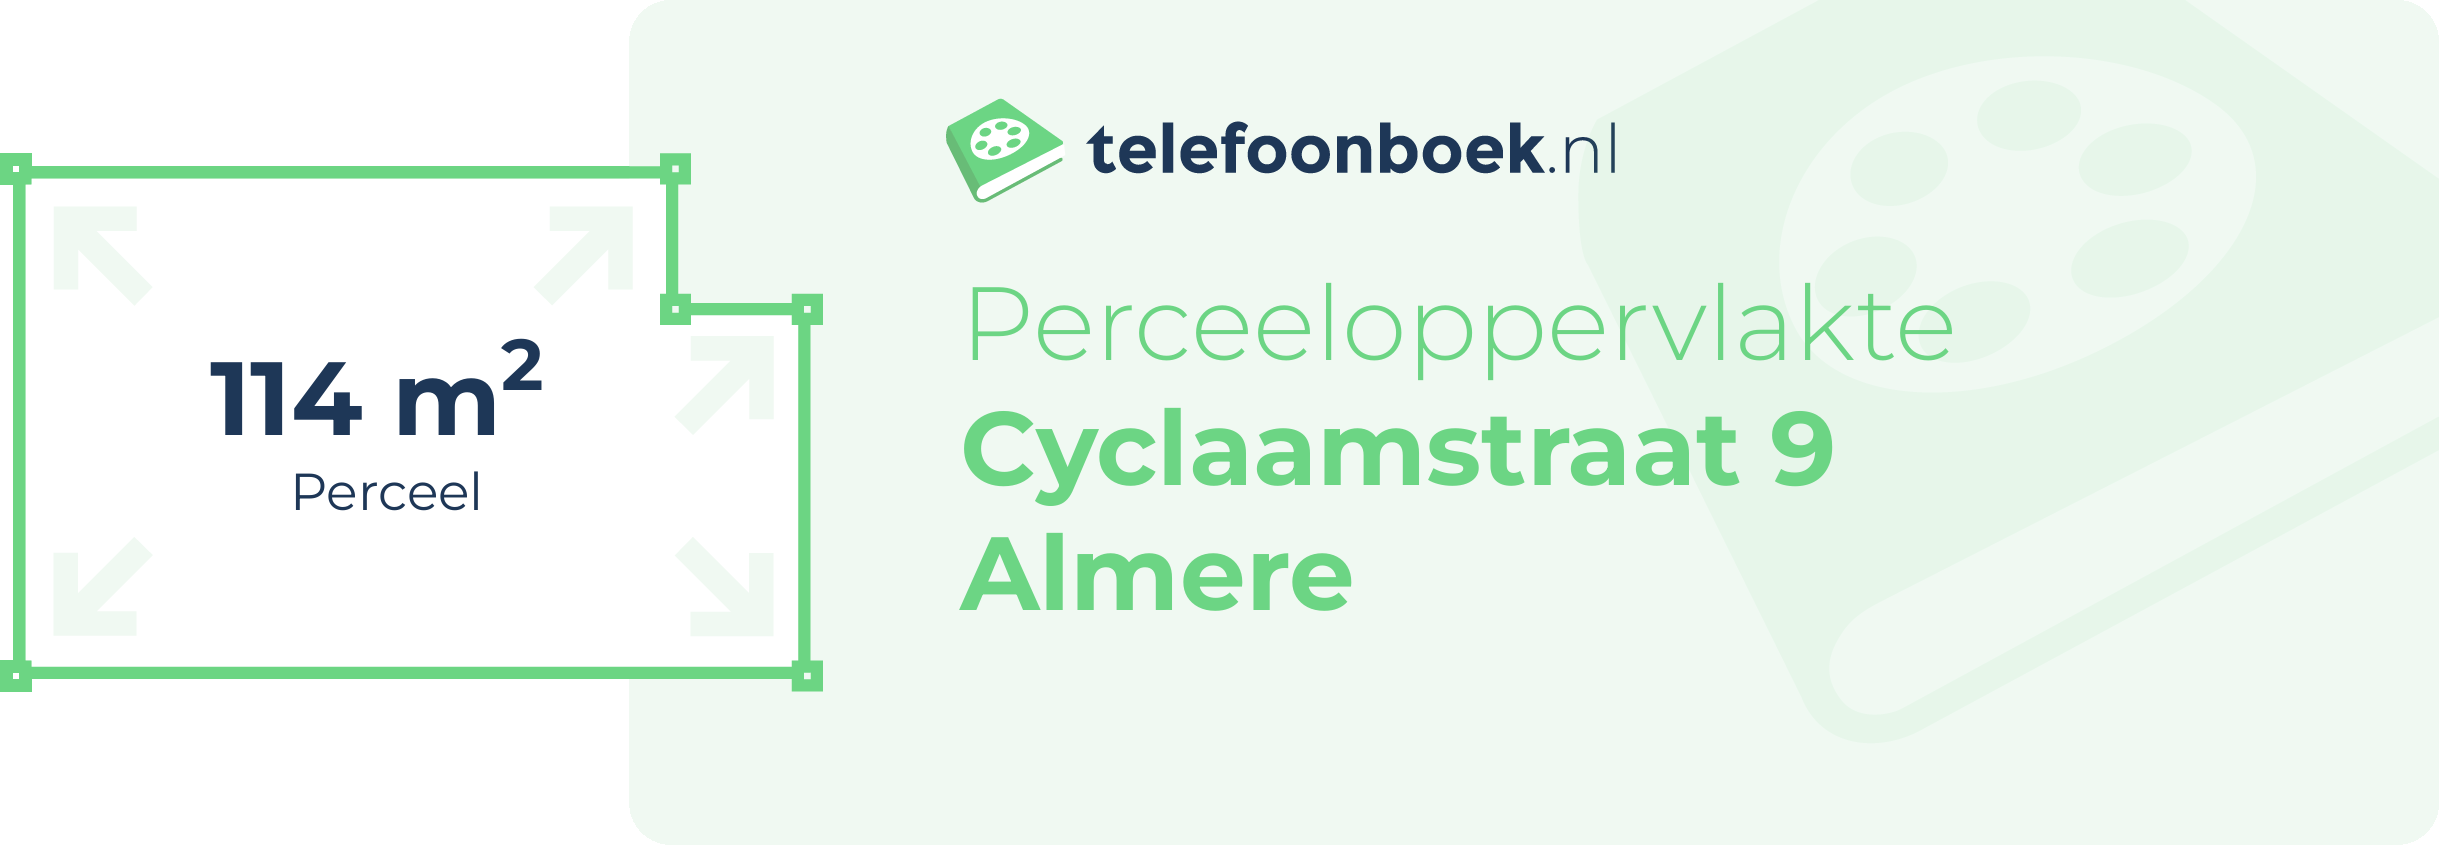 Perceeloppervlakte Cyclaamstraat 9 Almere